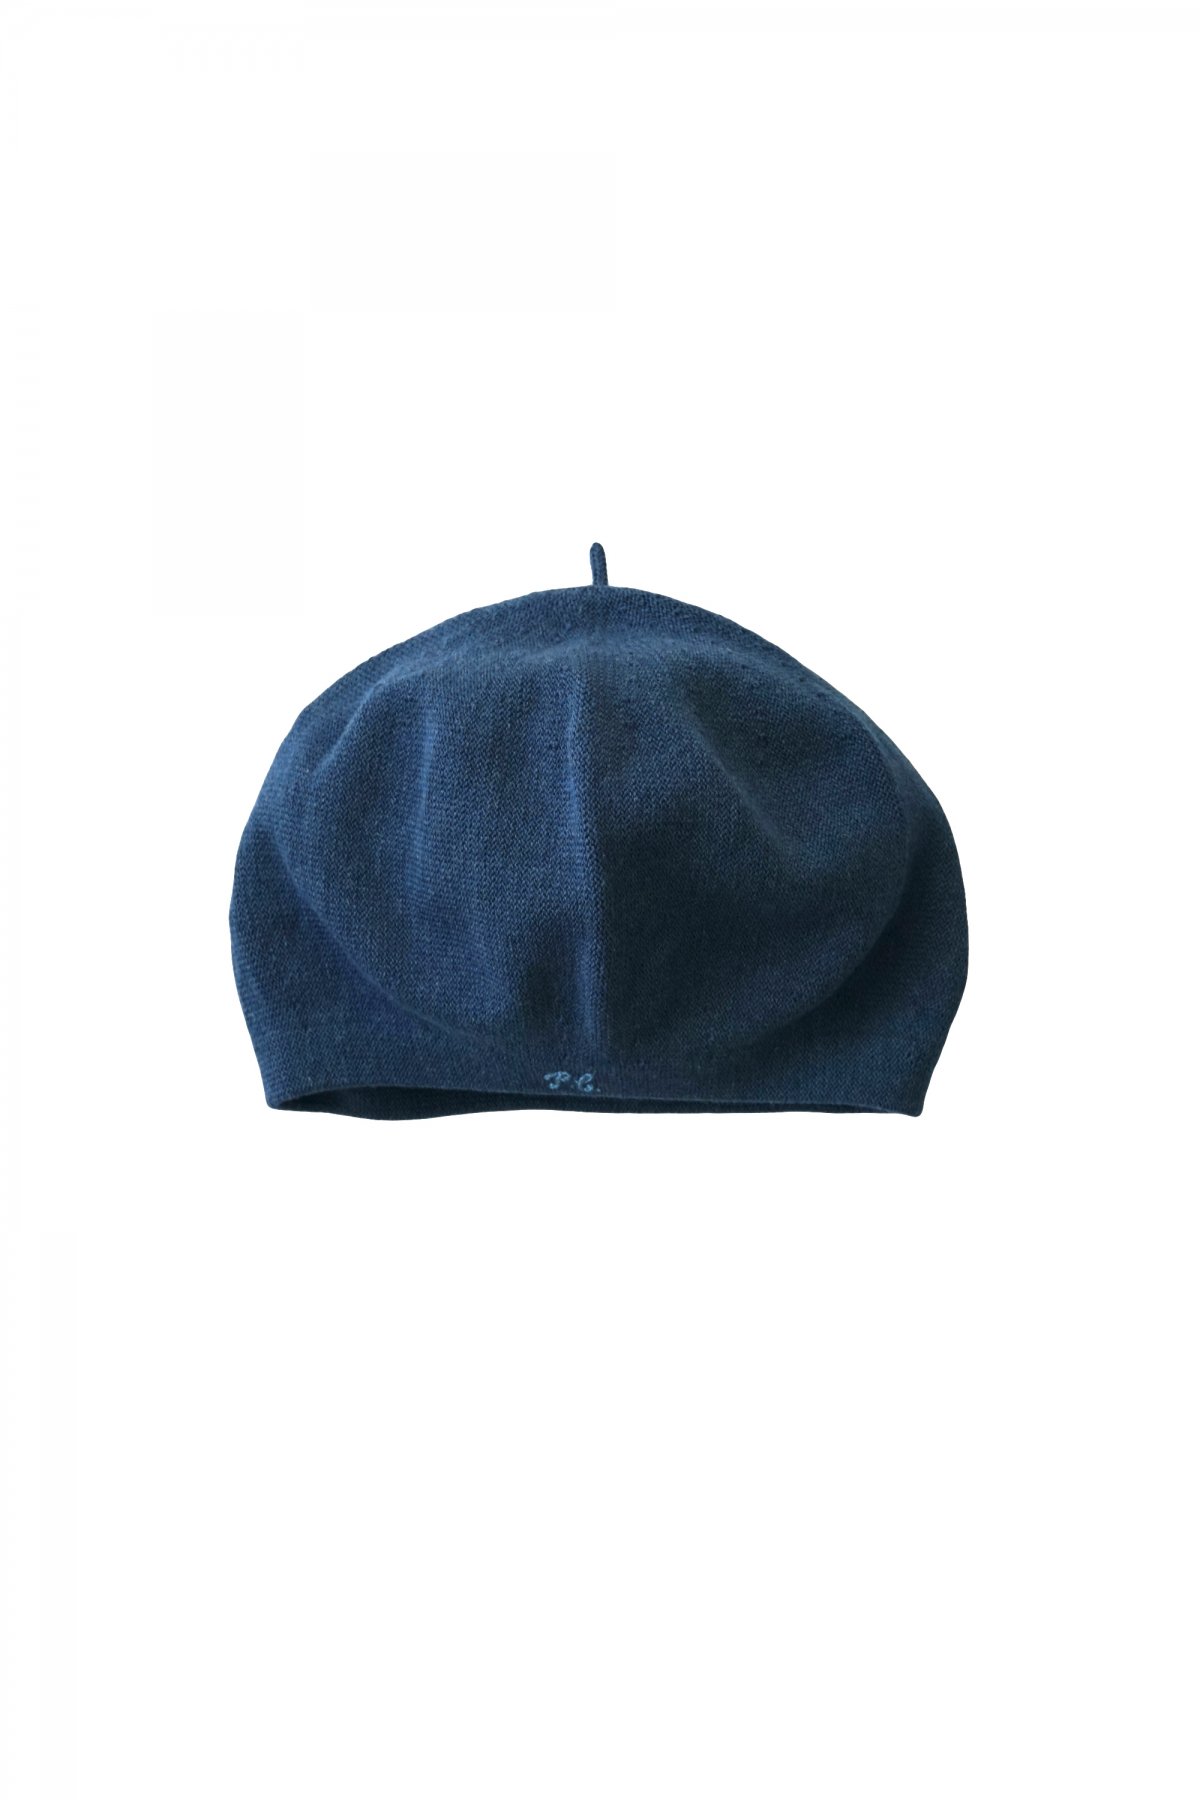 ポータークラシック 剣道 ベレー帽 - 帽子